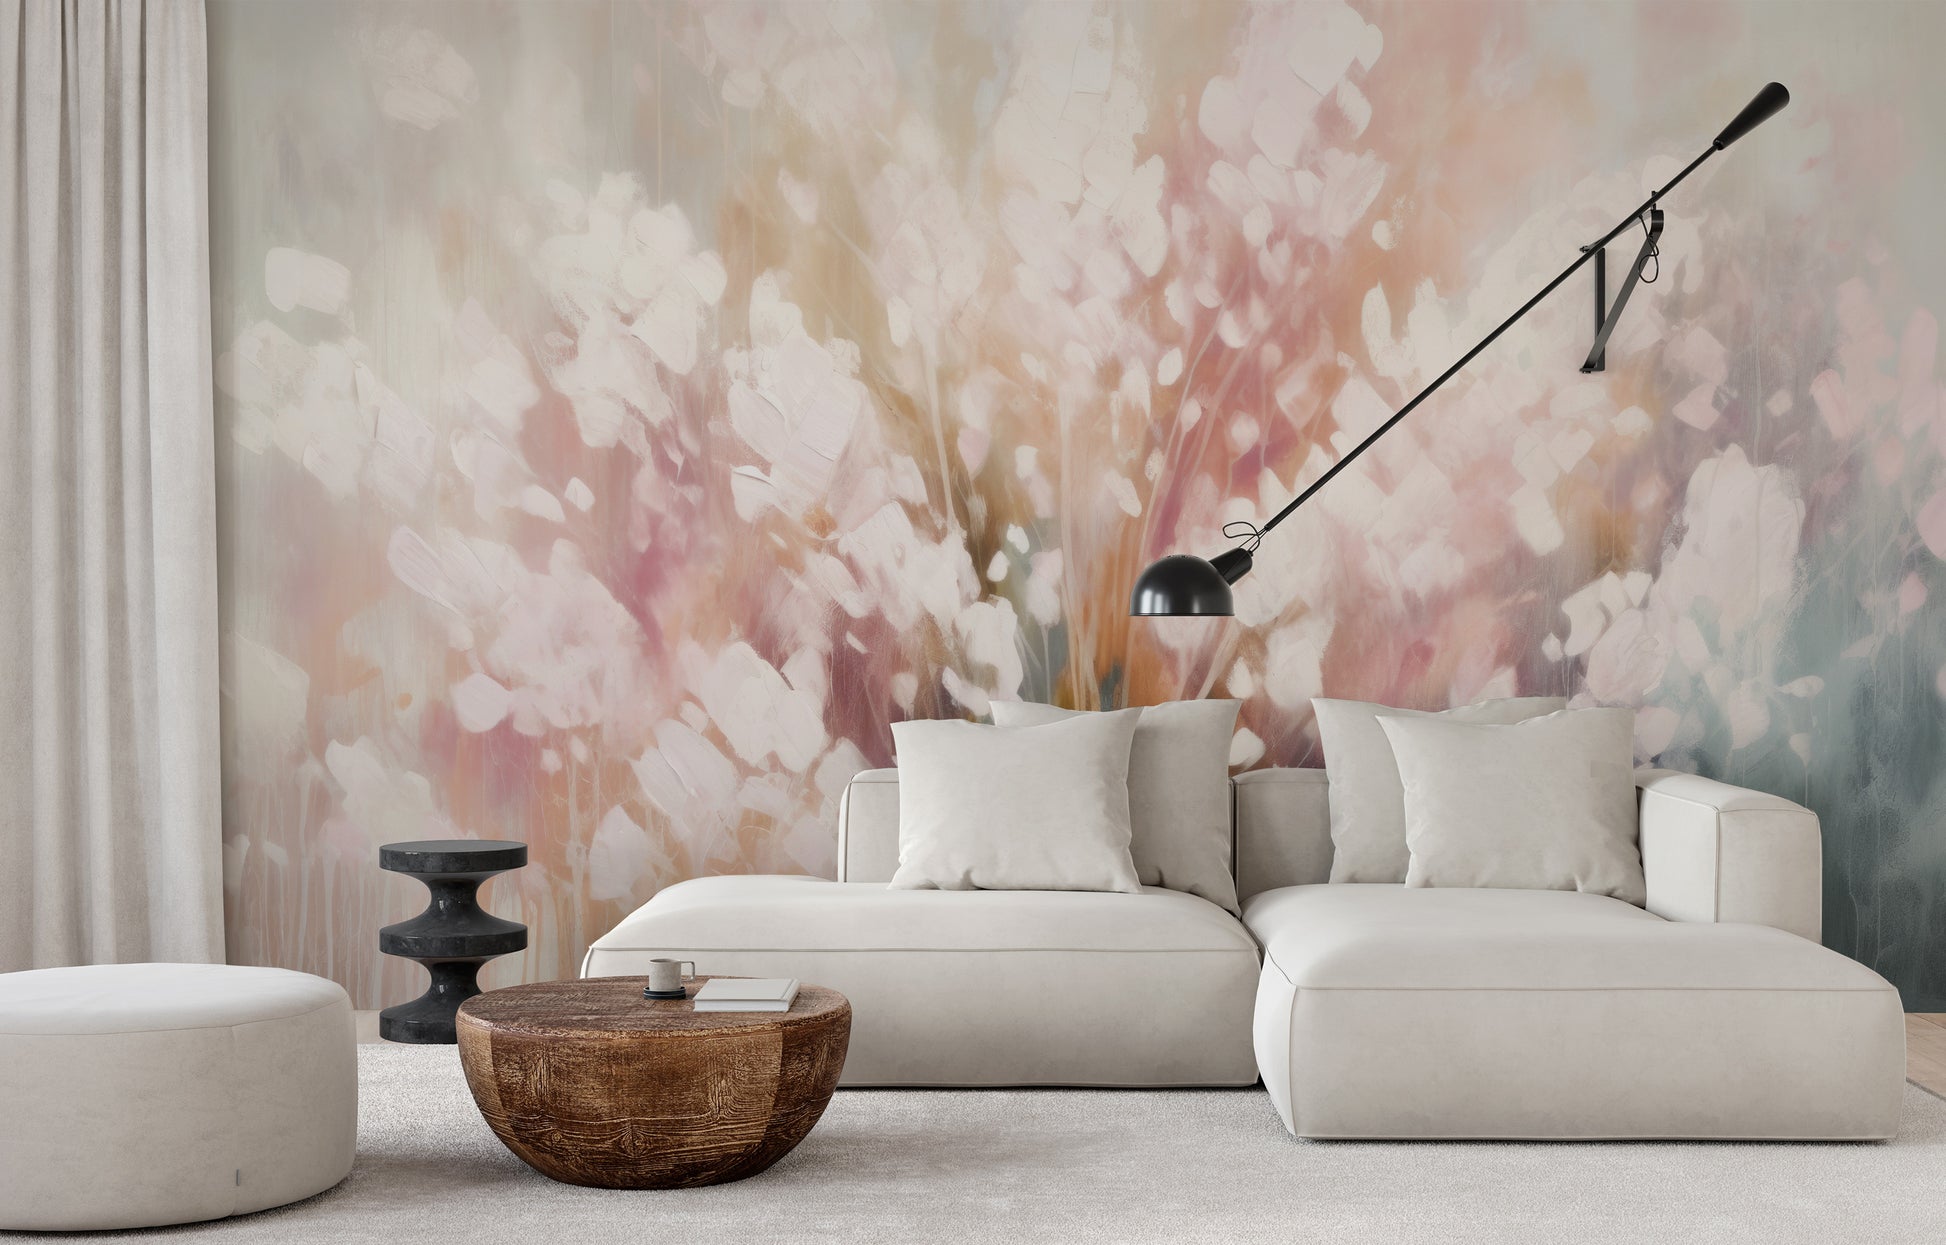 Fototapeta malowana o nazwie Ethereal White Blossom pokazana w aranżacji wnętrza.